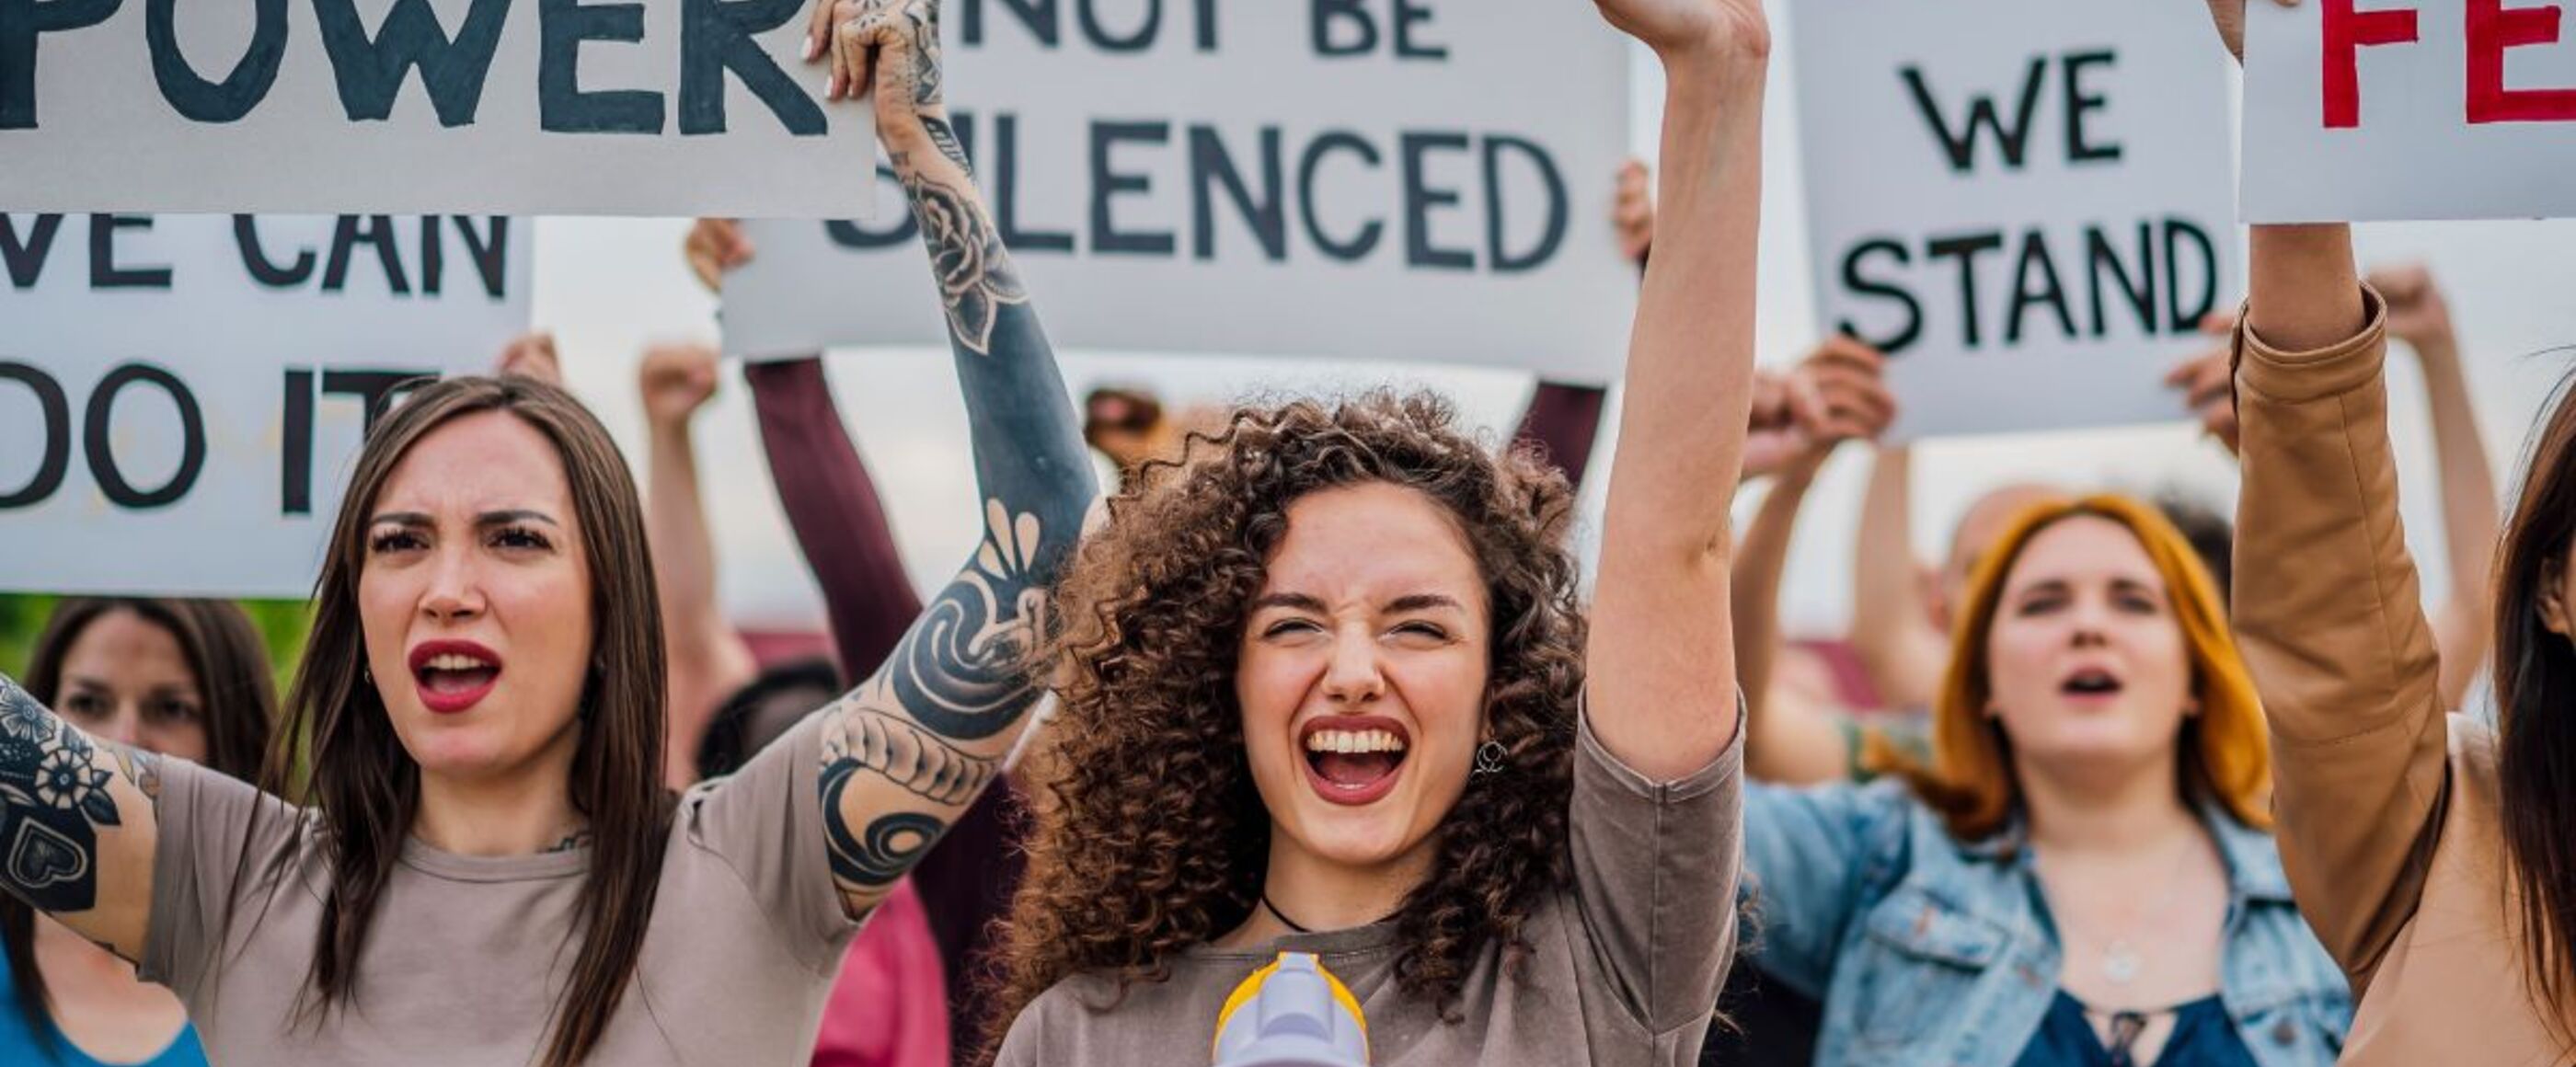 Junge, weiblich gelesene Personen demonstrieren mit Plakaten, auf denen steht: Girl power - Frauenpower, We will not be silenced - Wir werden nicht leise gestellt, United we stand - Wir stehen gemeinsam